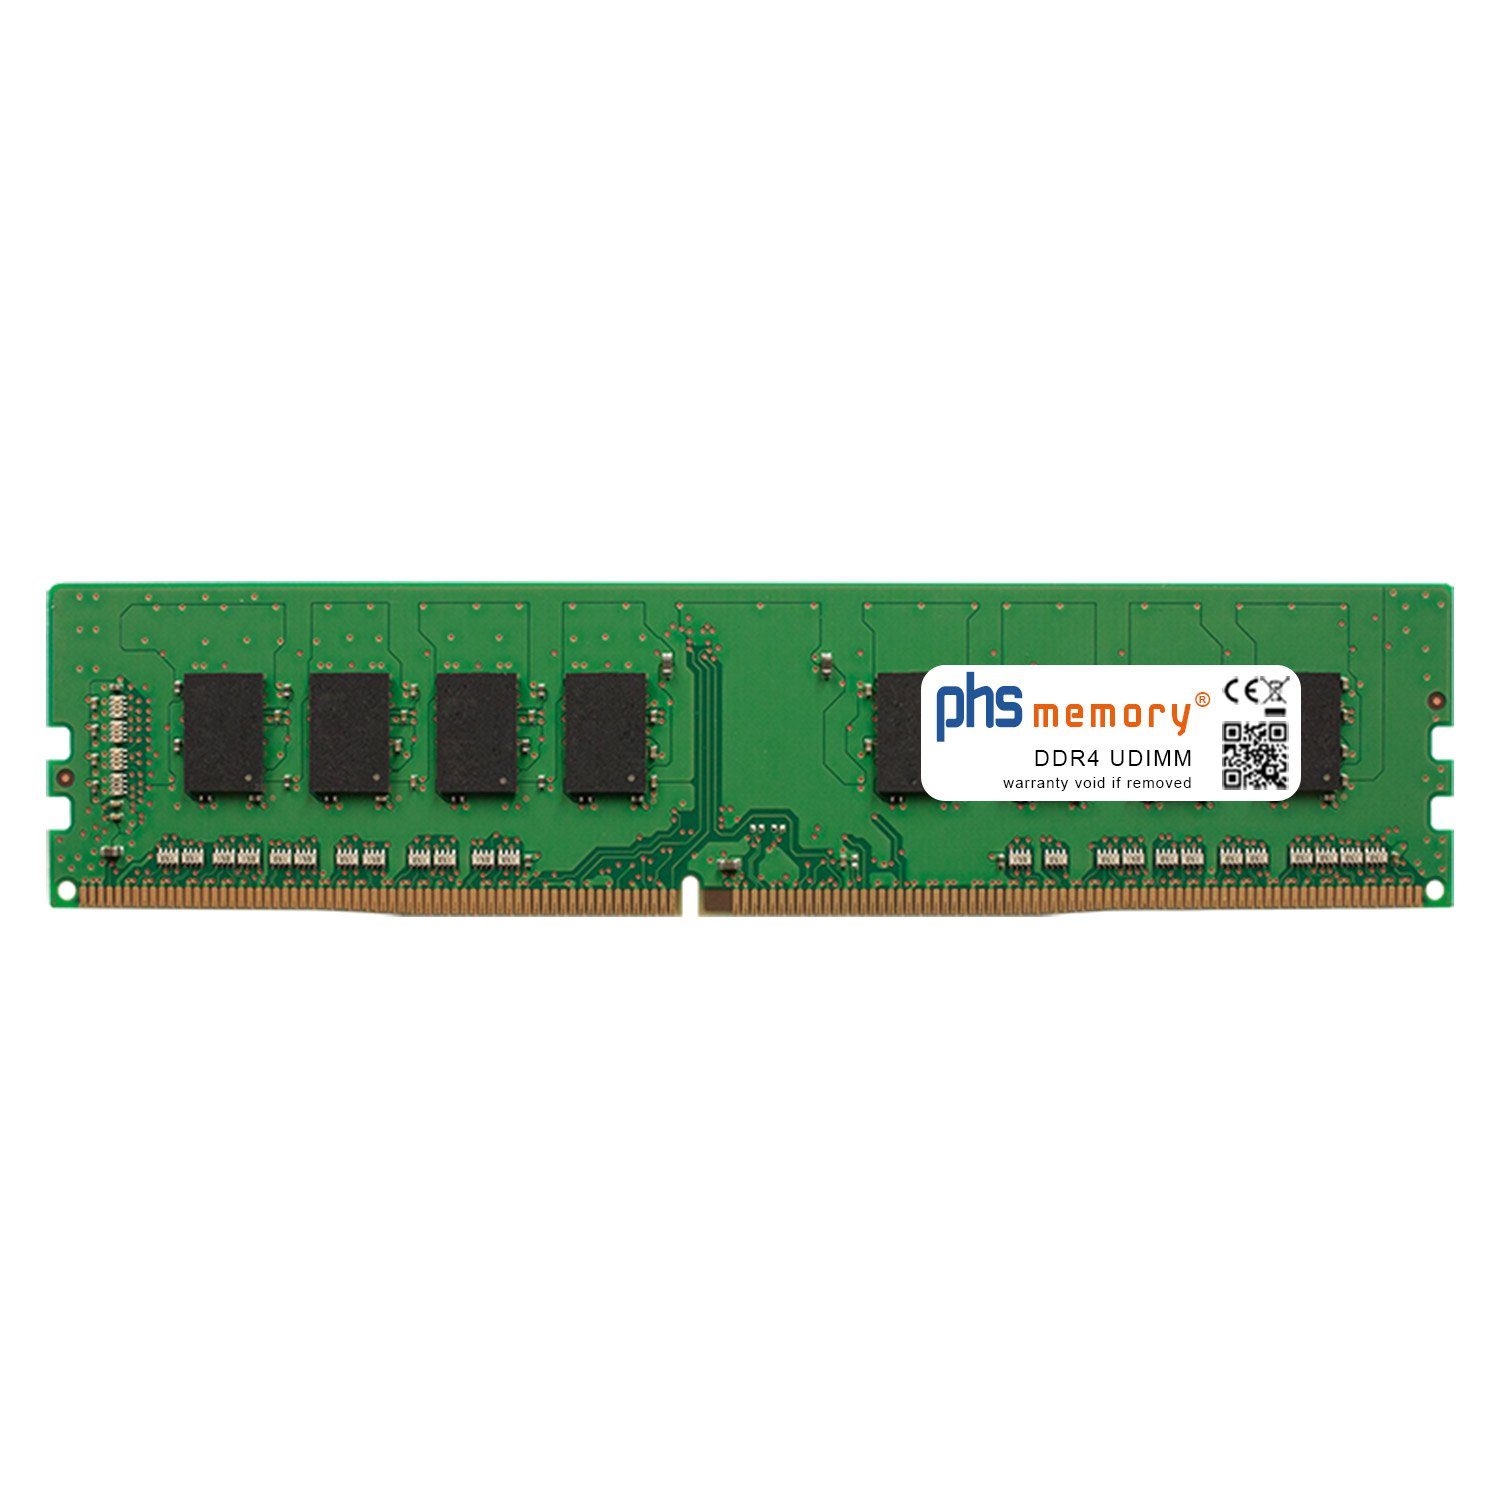 PHS-memory RAM für Captiva Highend Gaming R65-563 Arbeitsspeicher